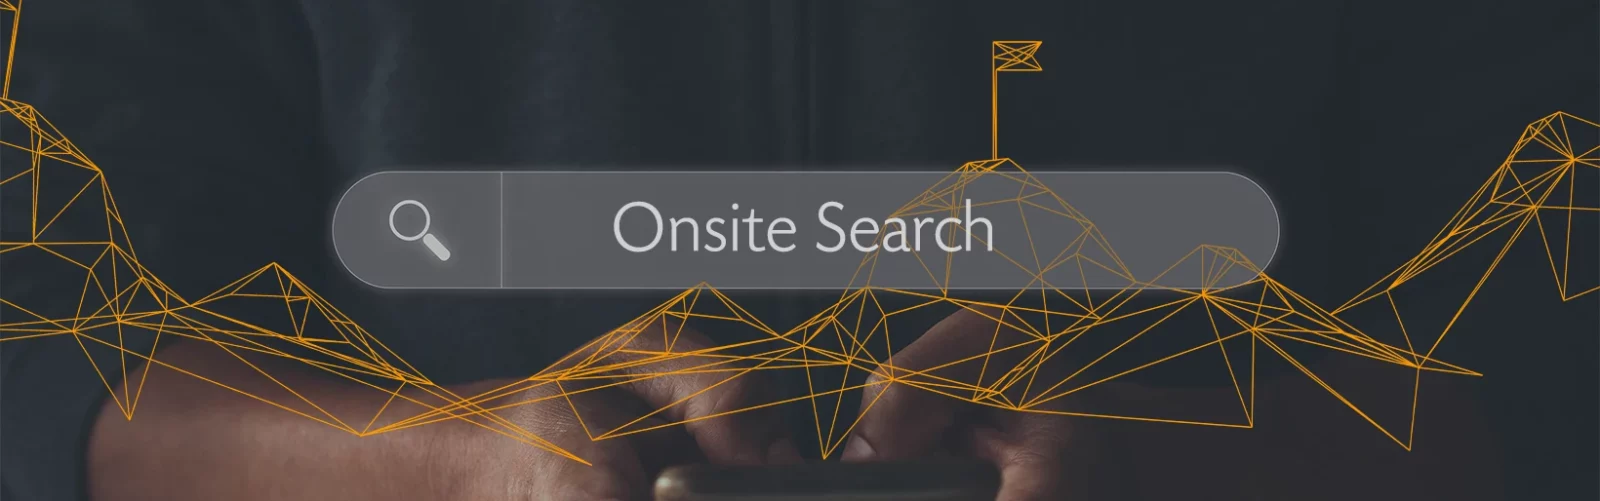 Onsite Search – schnell, personalisiert und intuitiv